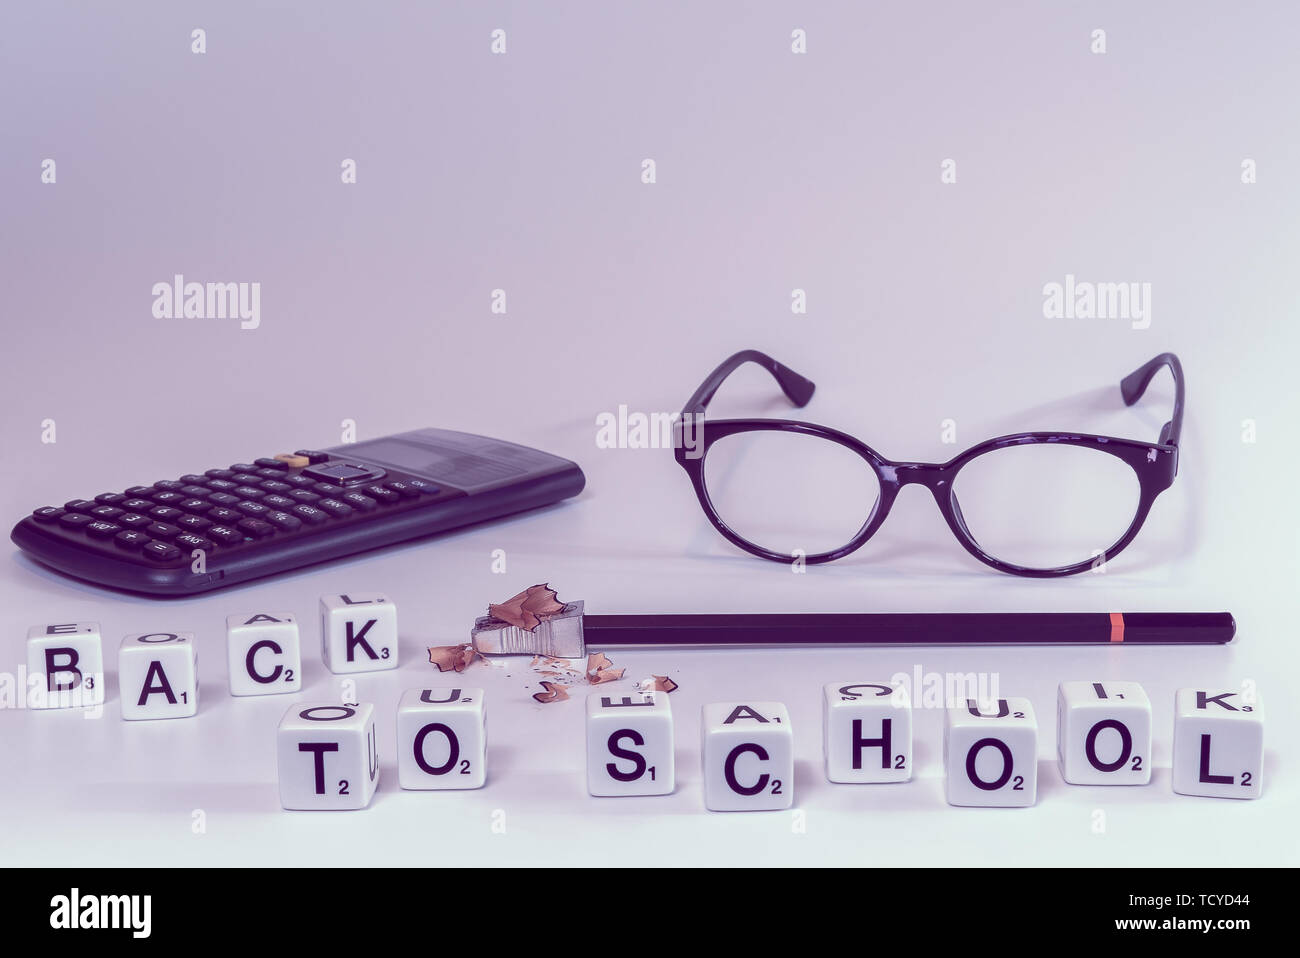 Vorderansicht von Schulmaterial mit Scrabble Buchstaben Rechtschreibung der Wörter zurück zu Schule in girly rosa Farbtönen - Begriff der Student Stockfoto